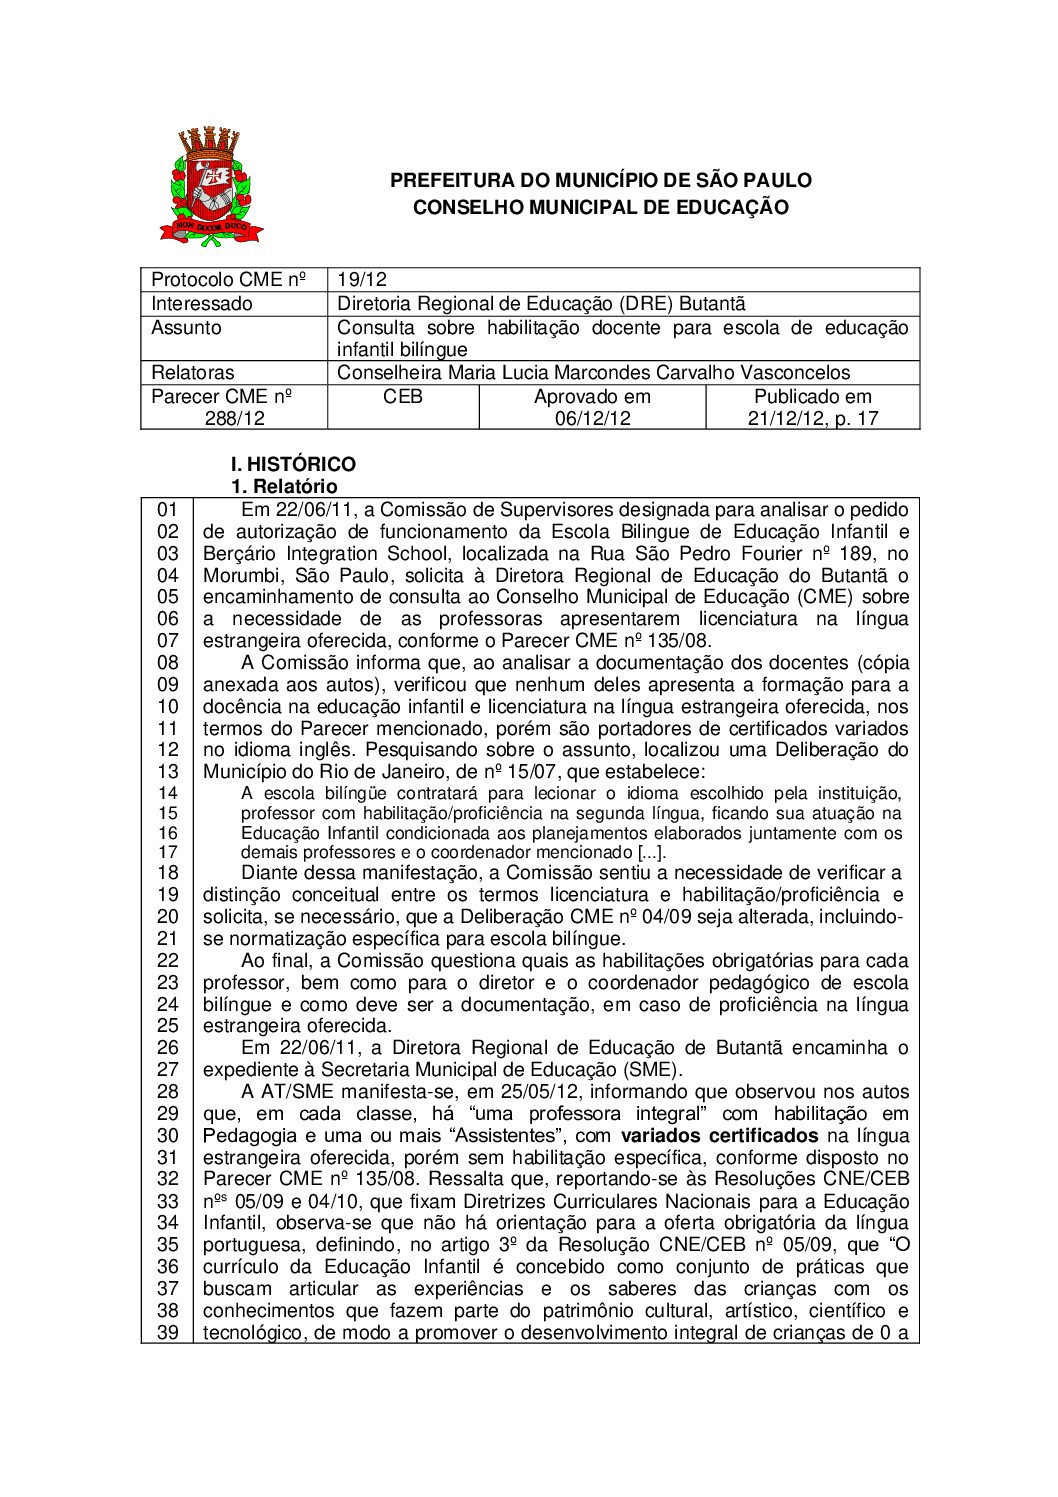 Parecer CME nº 288/2012 - Consulta sobre habilitação docente para escola de educação infantil bilíngue 